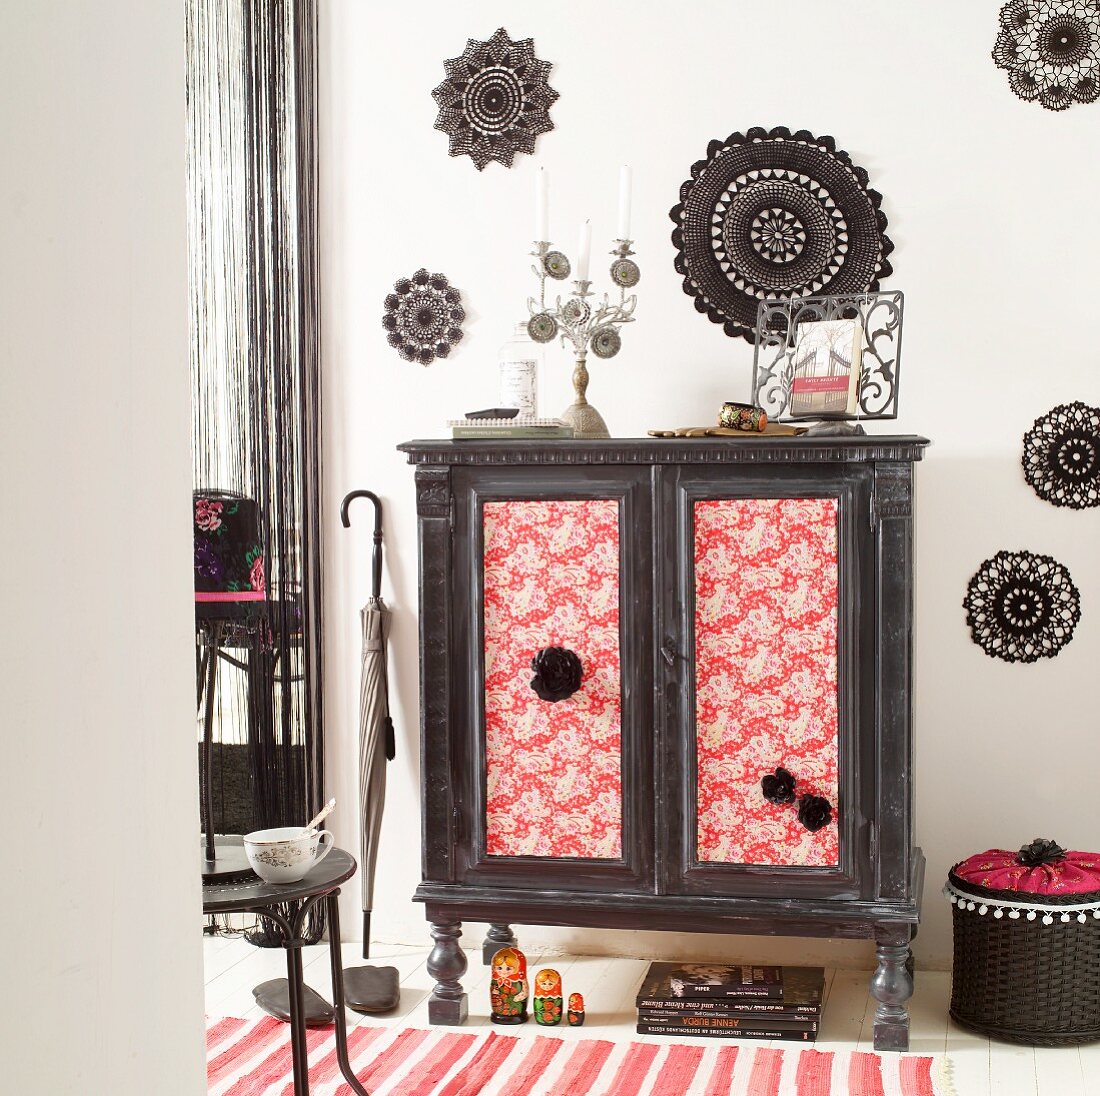 Make over - Vintage Schrank mit stoffbezogenen Türen im Folklore-Look, vor Wand mit schwarzen Häkeldeckchen